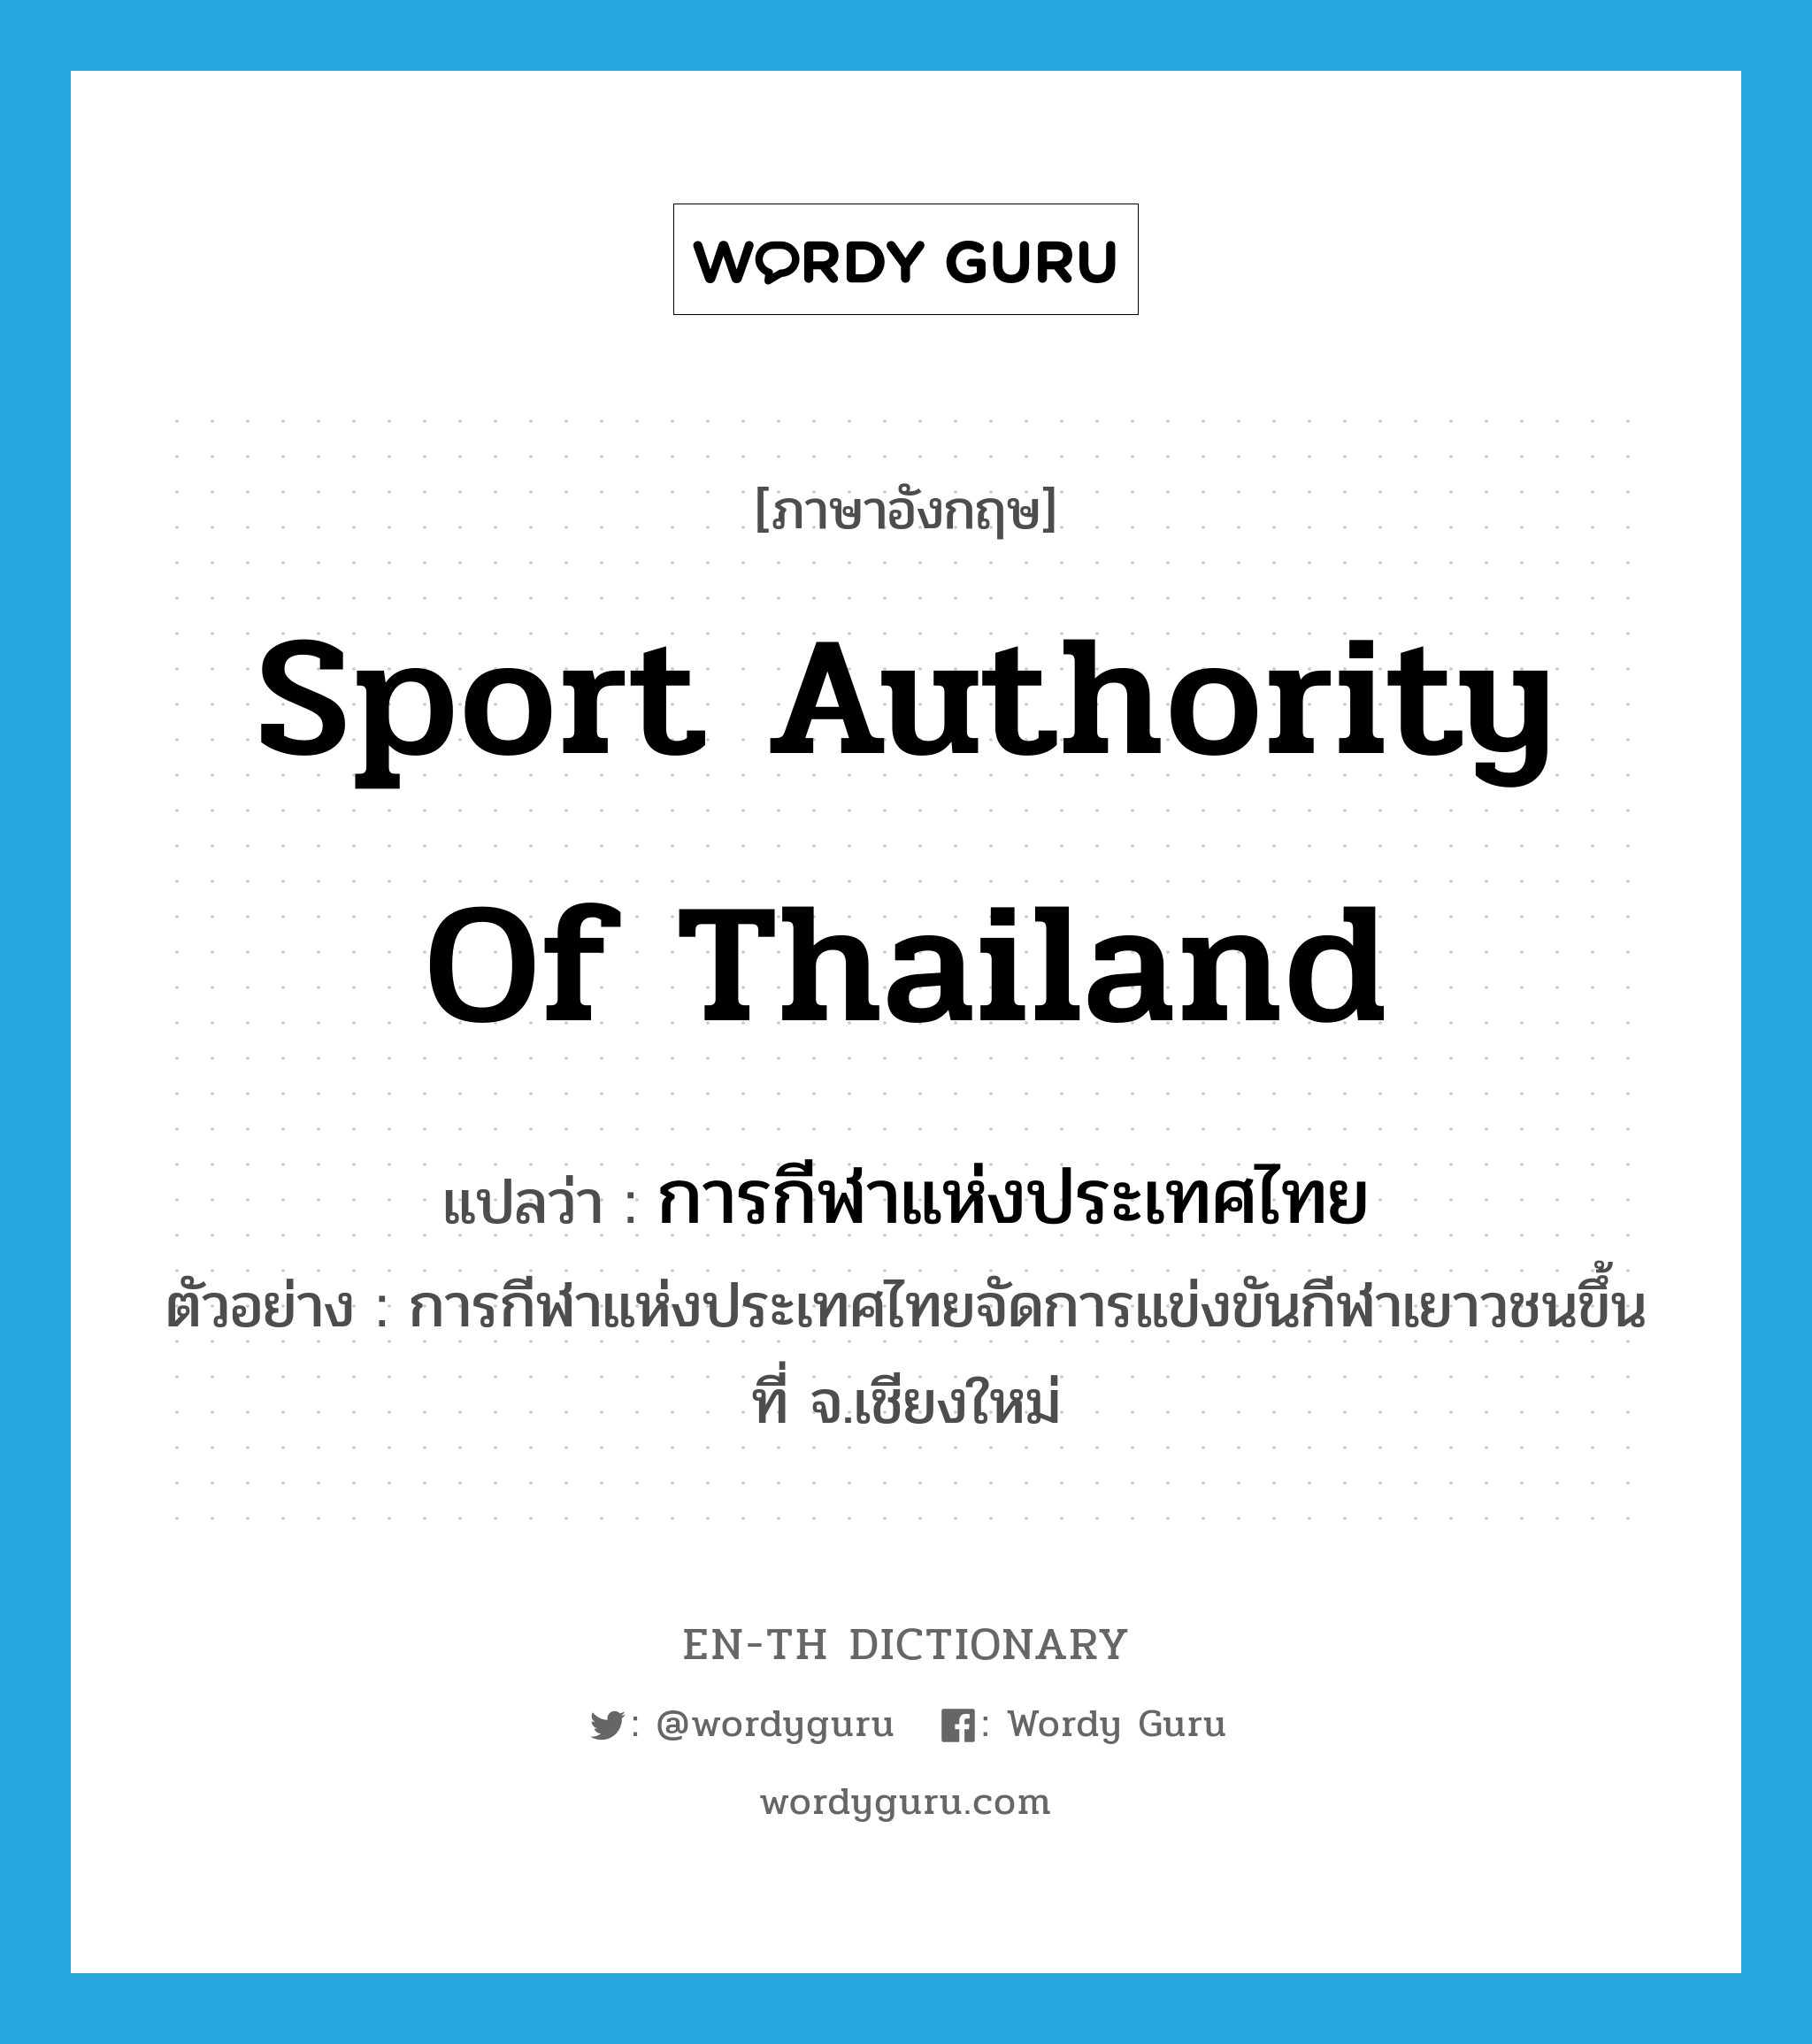 การกีฬาแห่งประเทศไทย ภาษาอังกฤษ?, คำศัพท์ภาษาอังกฤษ การกีฬาแห่งประเทศไทย แปลว่า Sport Authority of Thailand ประเภท N ตัวอย่าง การกีฬาแห่งประเทศไทยจัดการแข่งขันกีฬาเยาวชนขึ้นที่ จ.เชียงใหม่ หมวด N